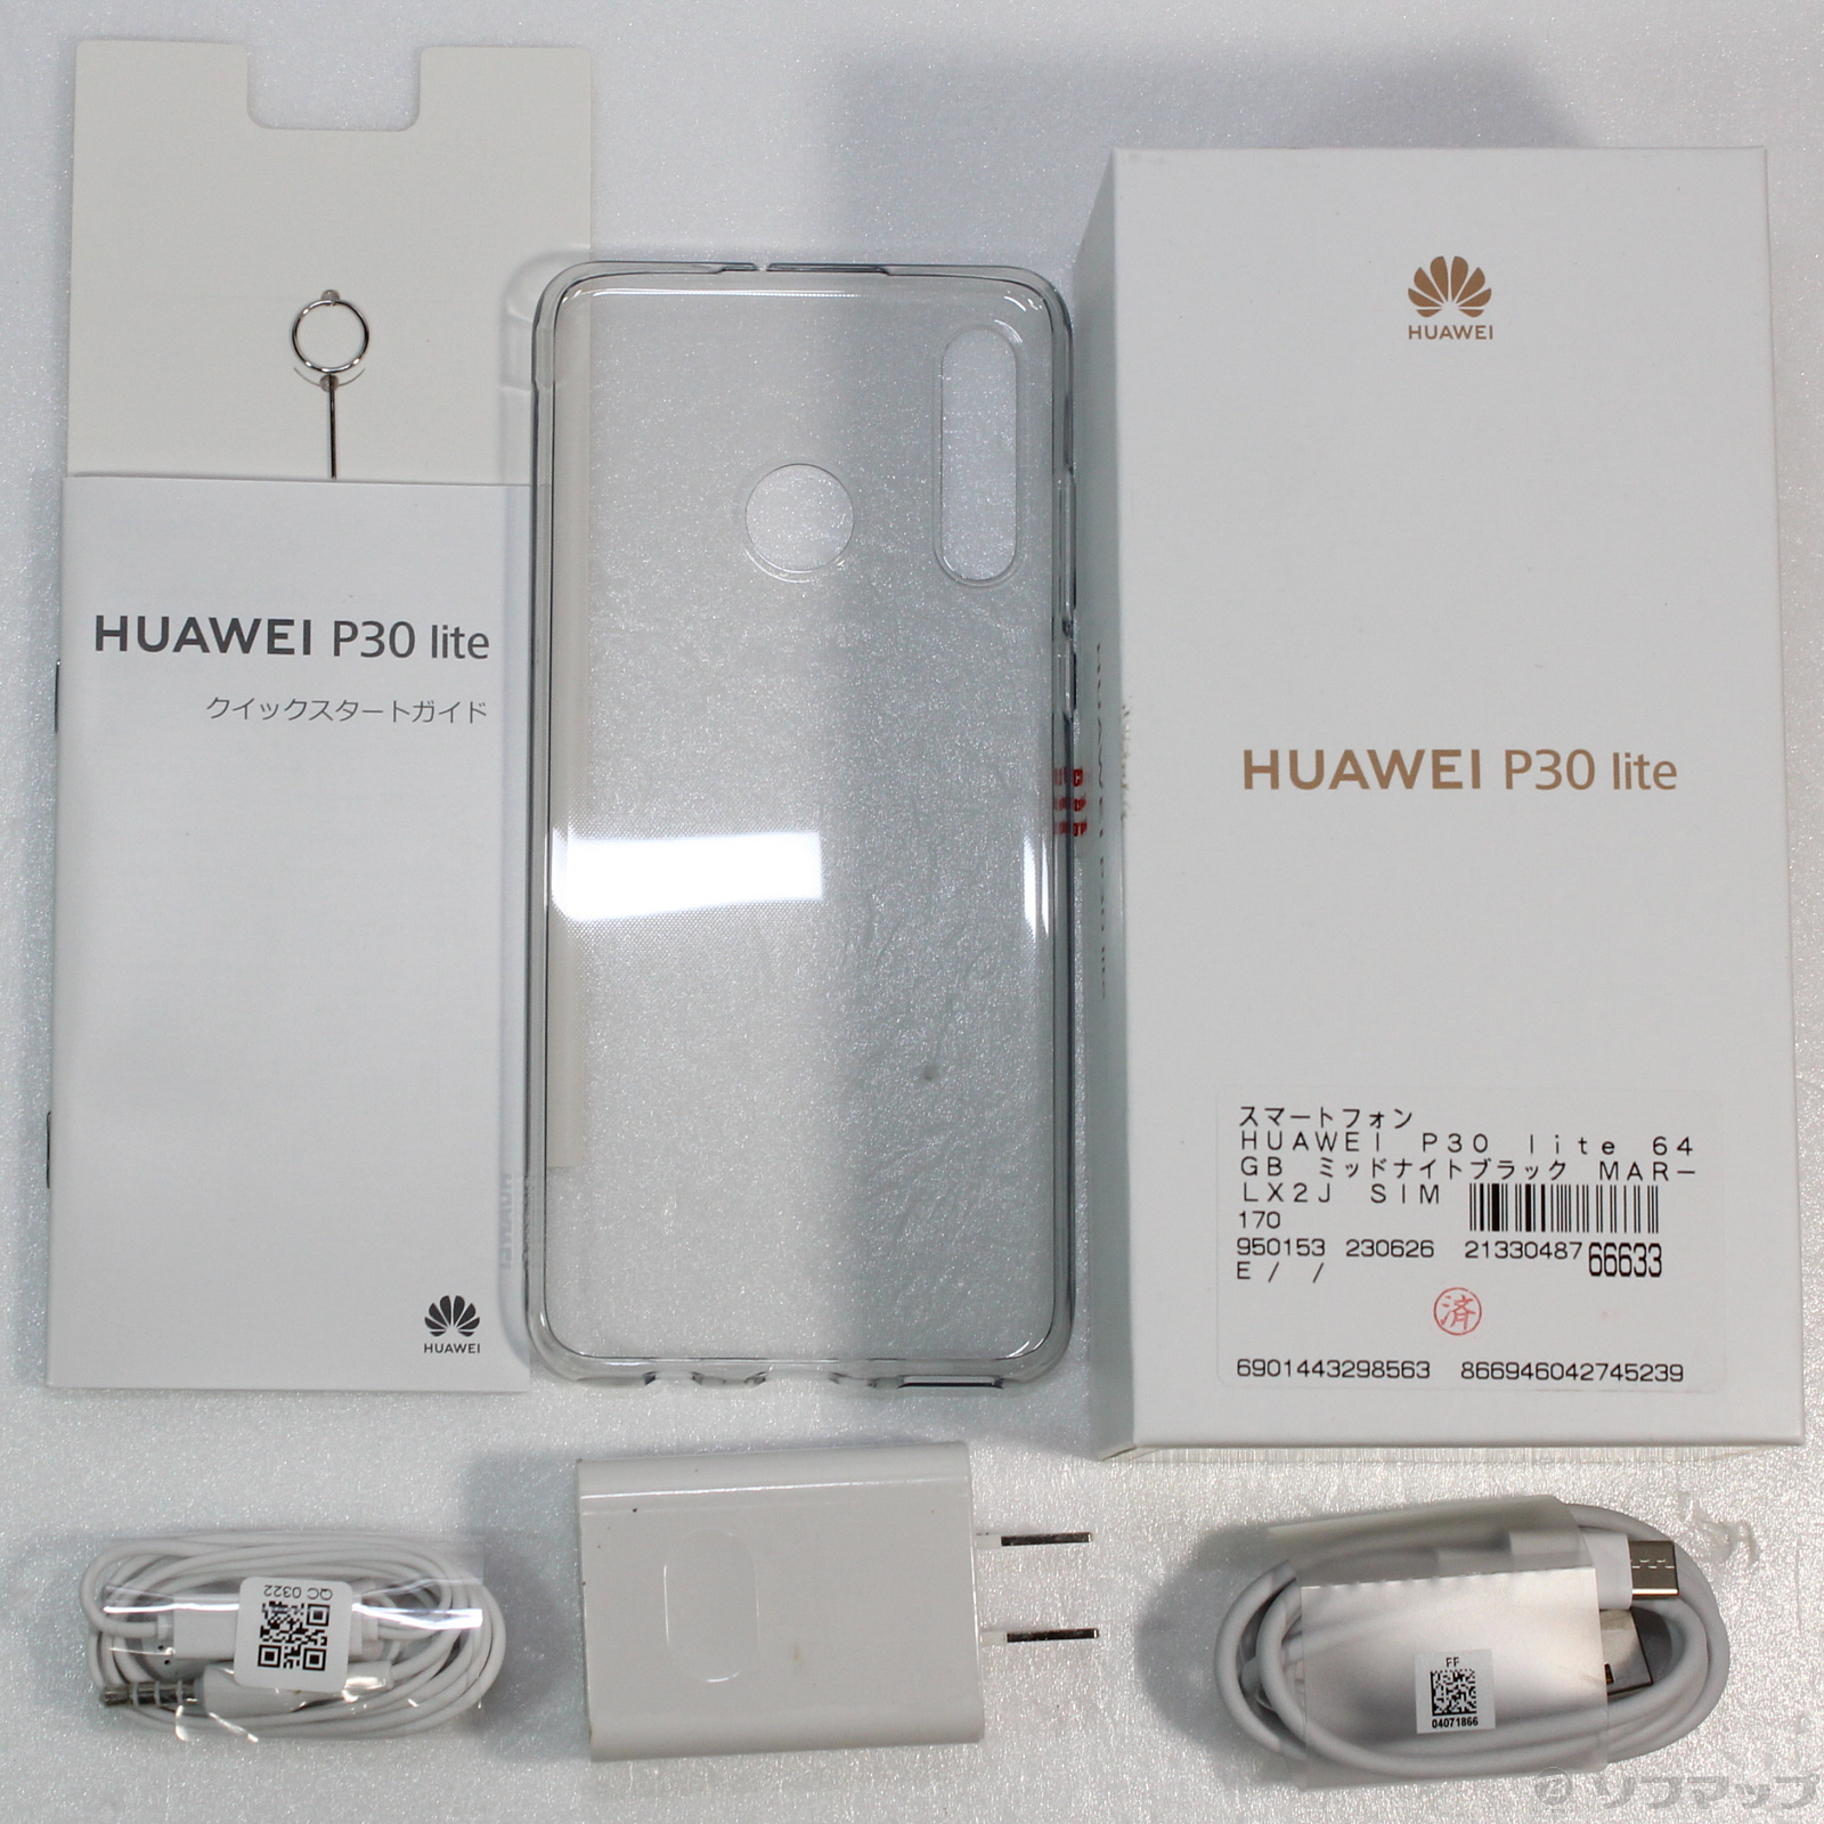 中古】HUAWEI P30 lite 64GB ミッドナイトブラック MAR-LX2J SIMフリー